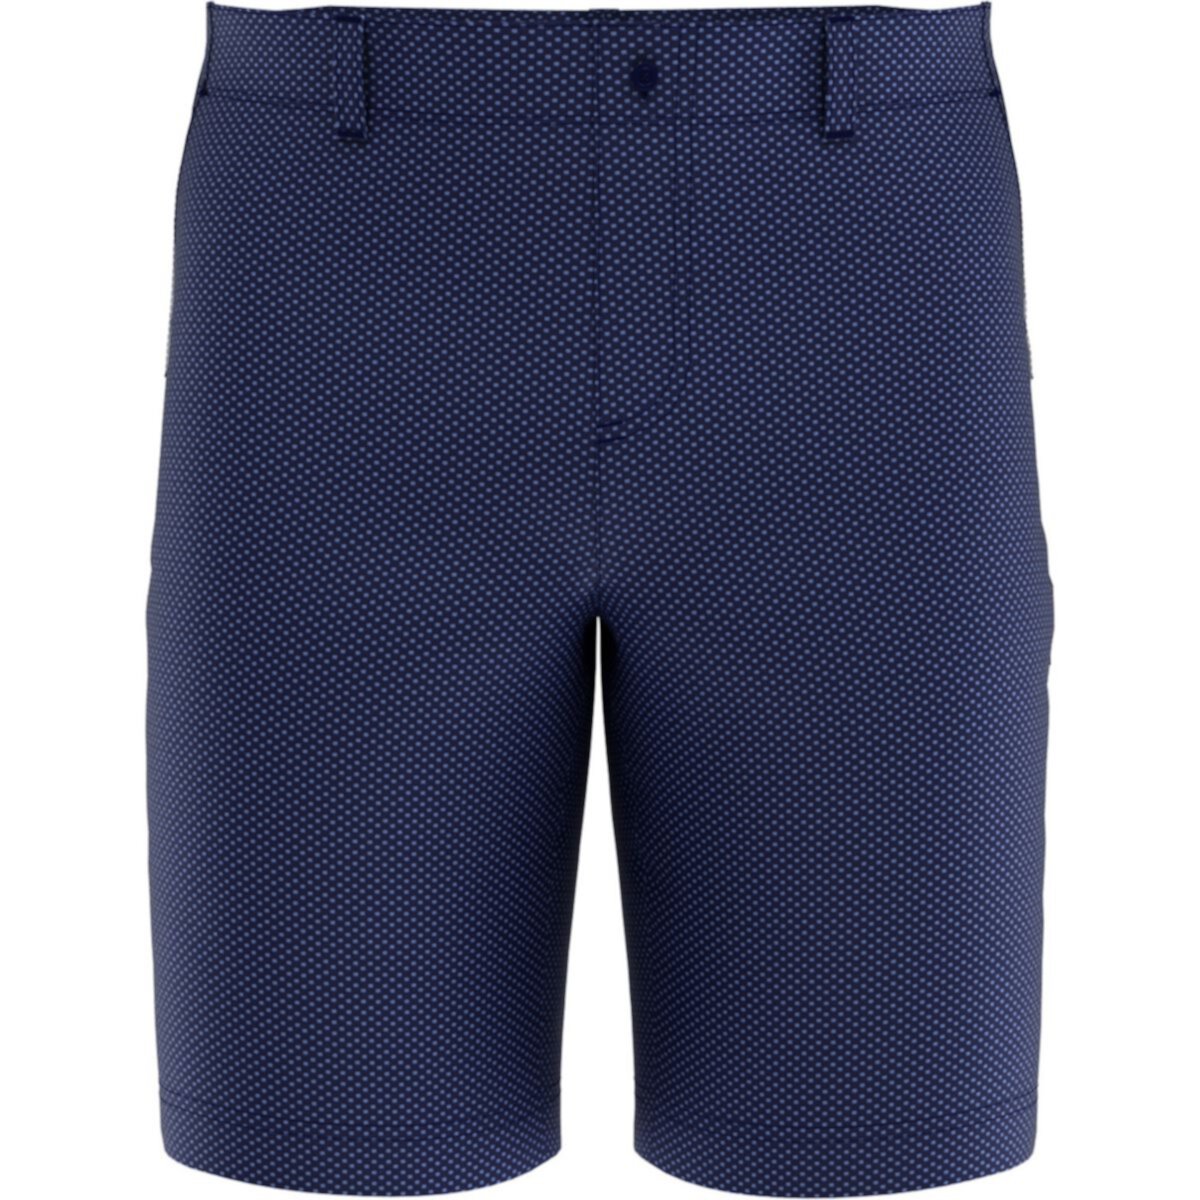 Мужские шорты для гольфа с квадратным геометрическим принтом Jack Nicklaus Flat-Front Jack Nicklaus